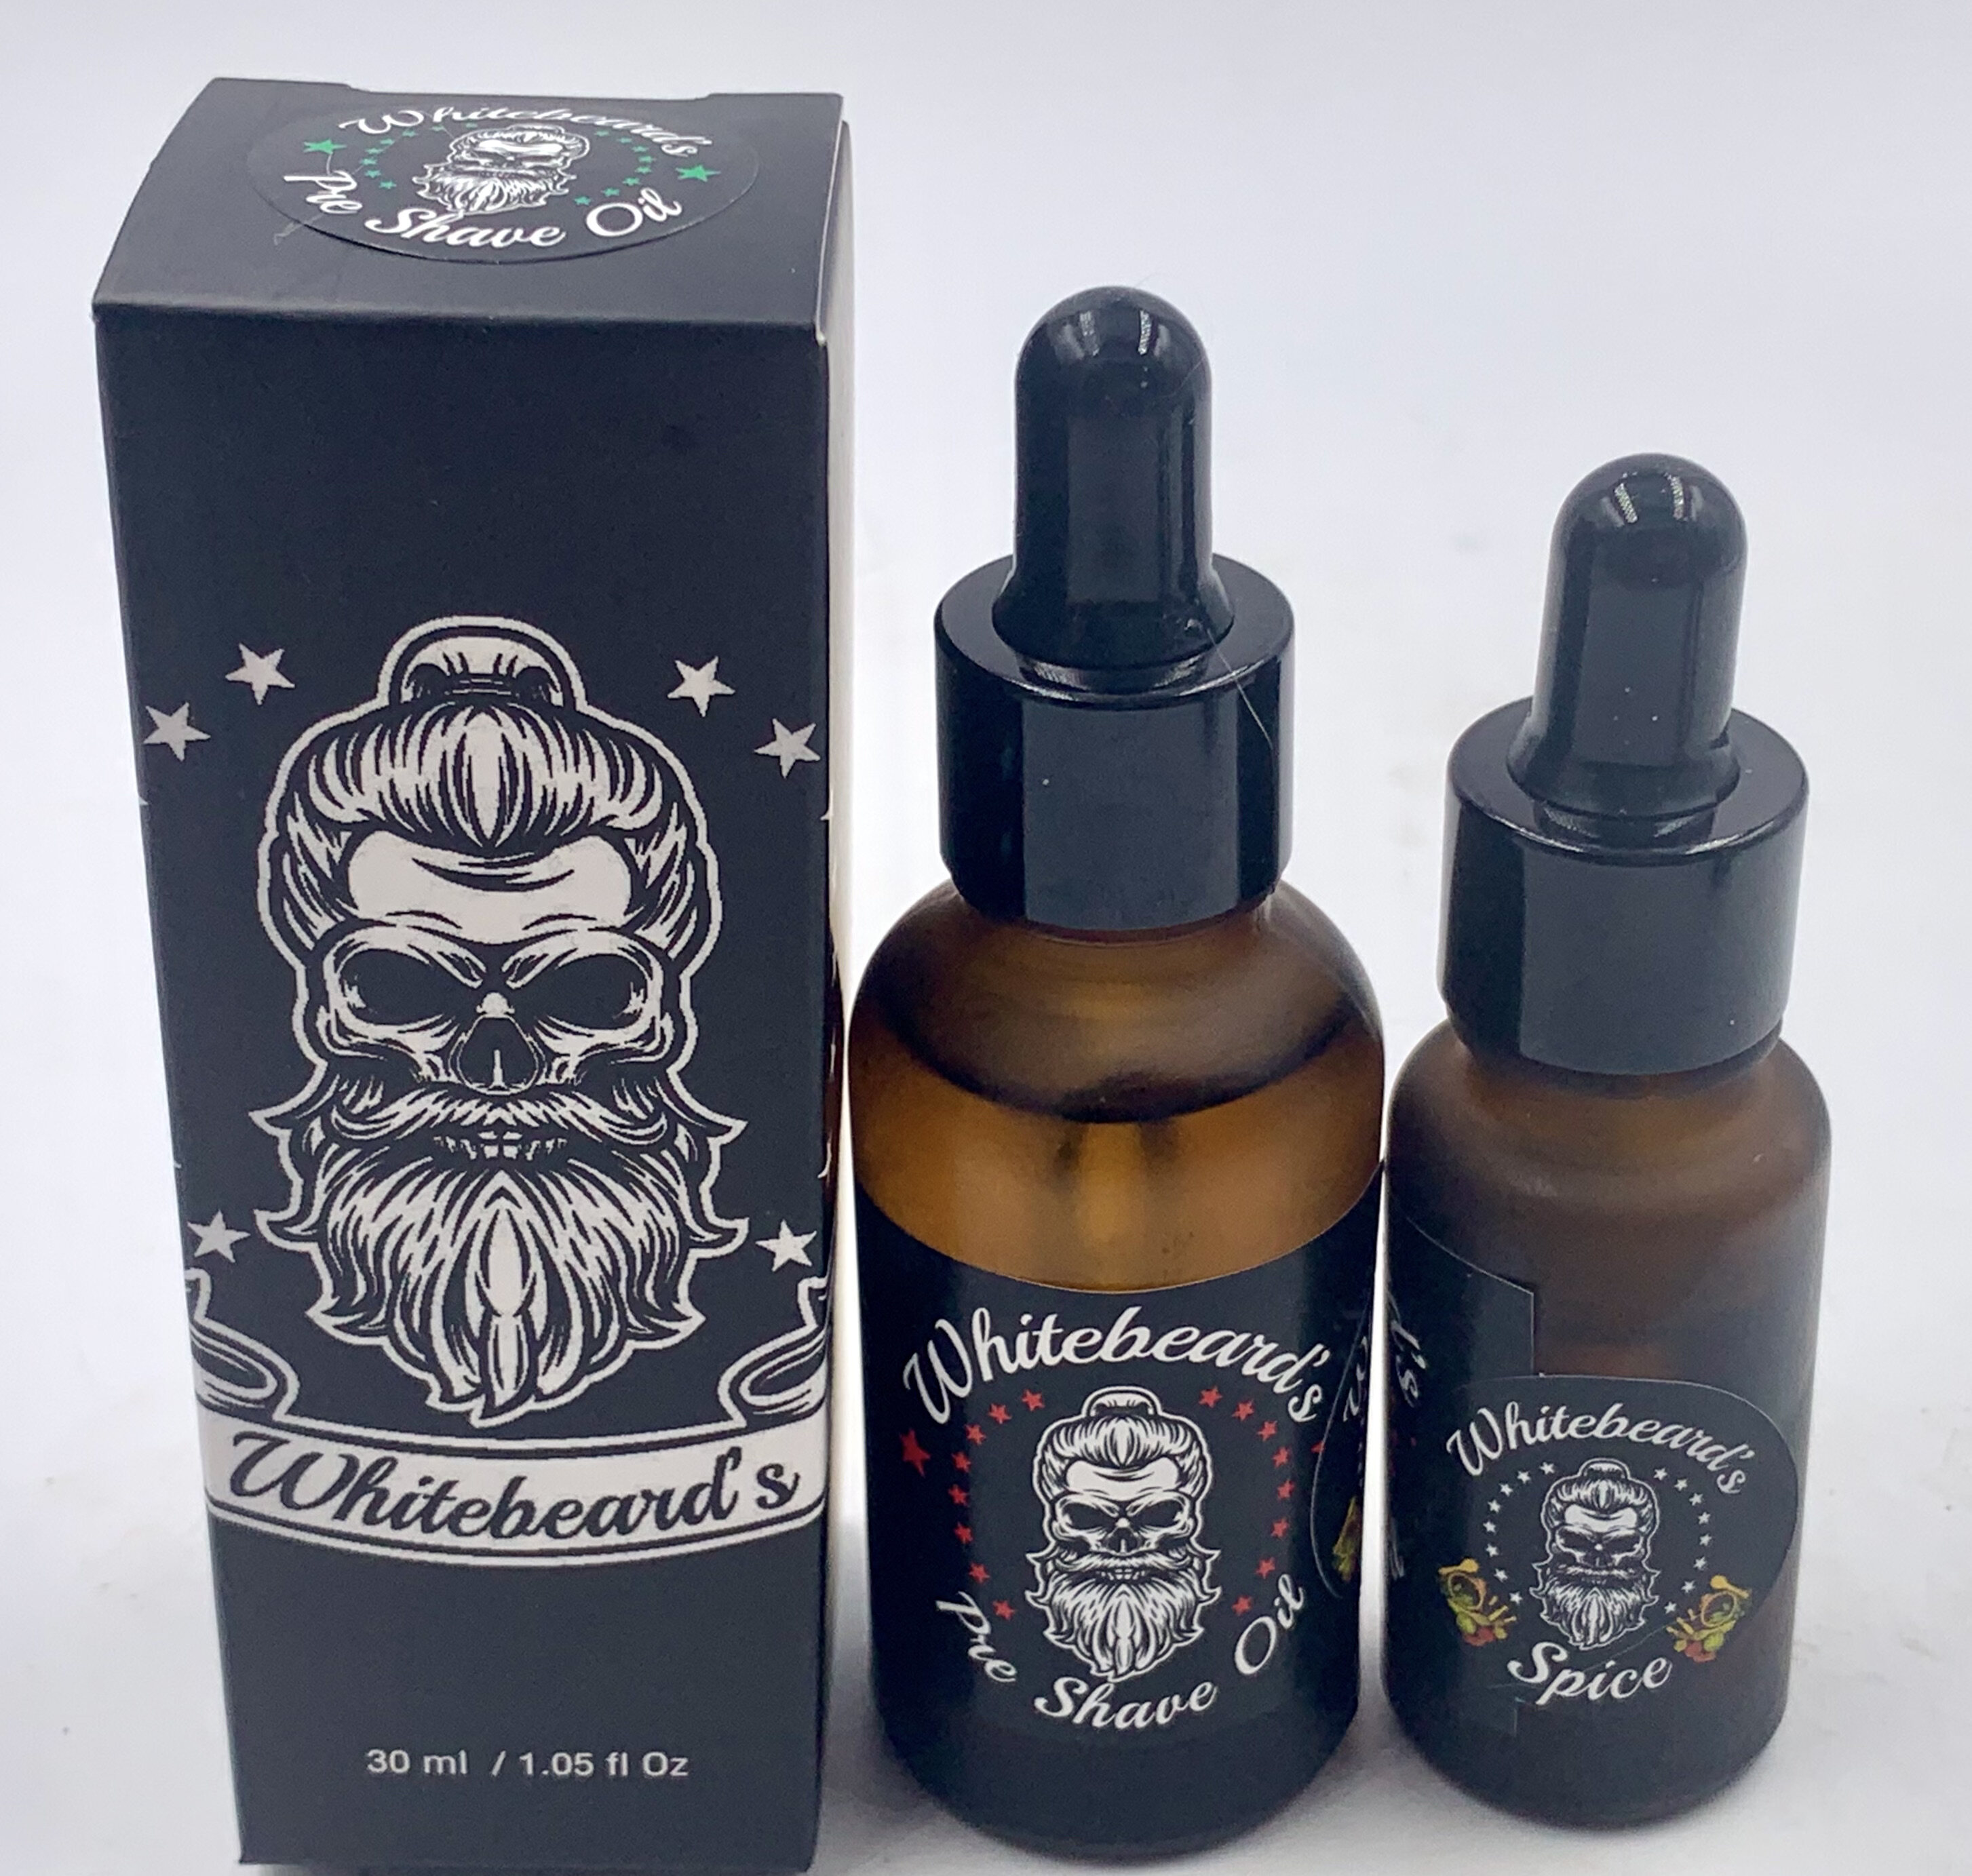 Whitebeard's Pre Shave Oil - Bergamot Sandalwood Scent Premium Blend